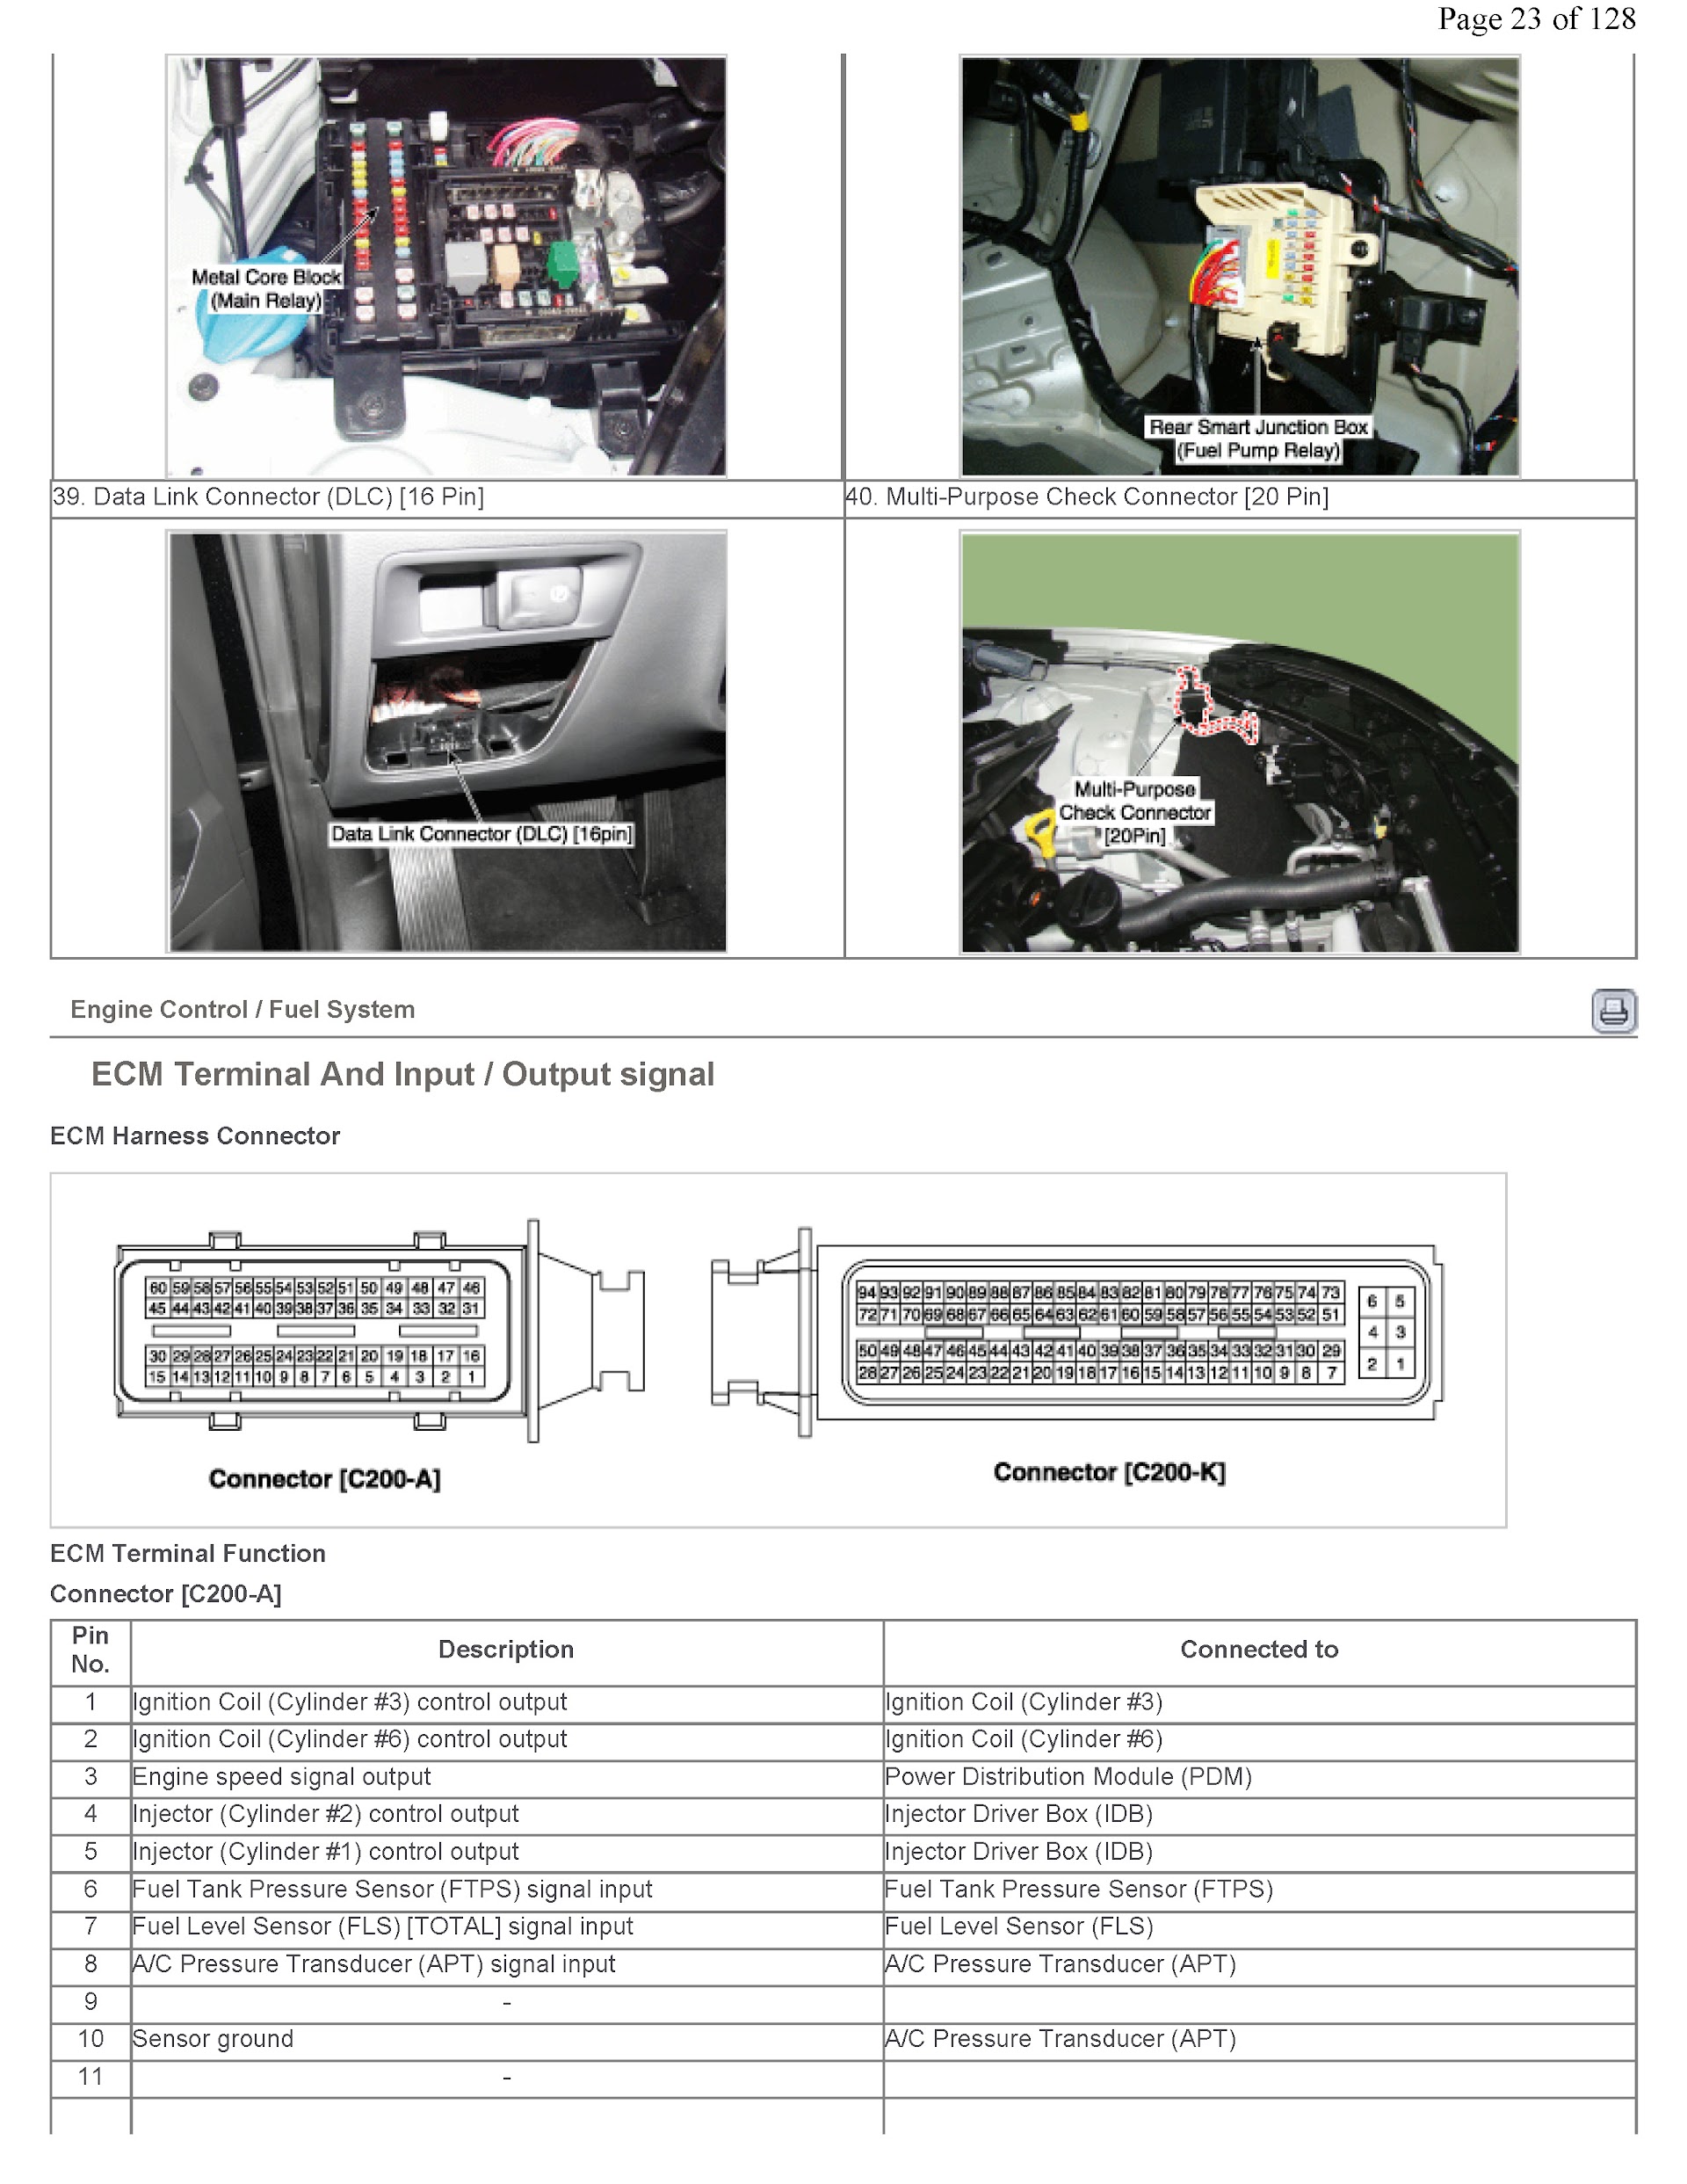 Hyundai Genesis Repair Manual, ECM Terminal Inputs Signal